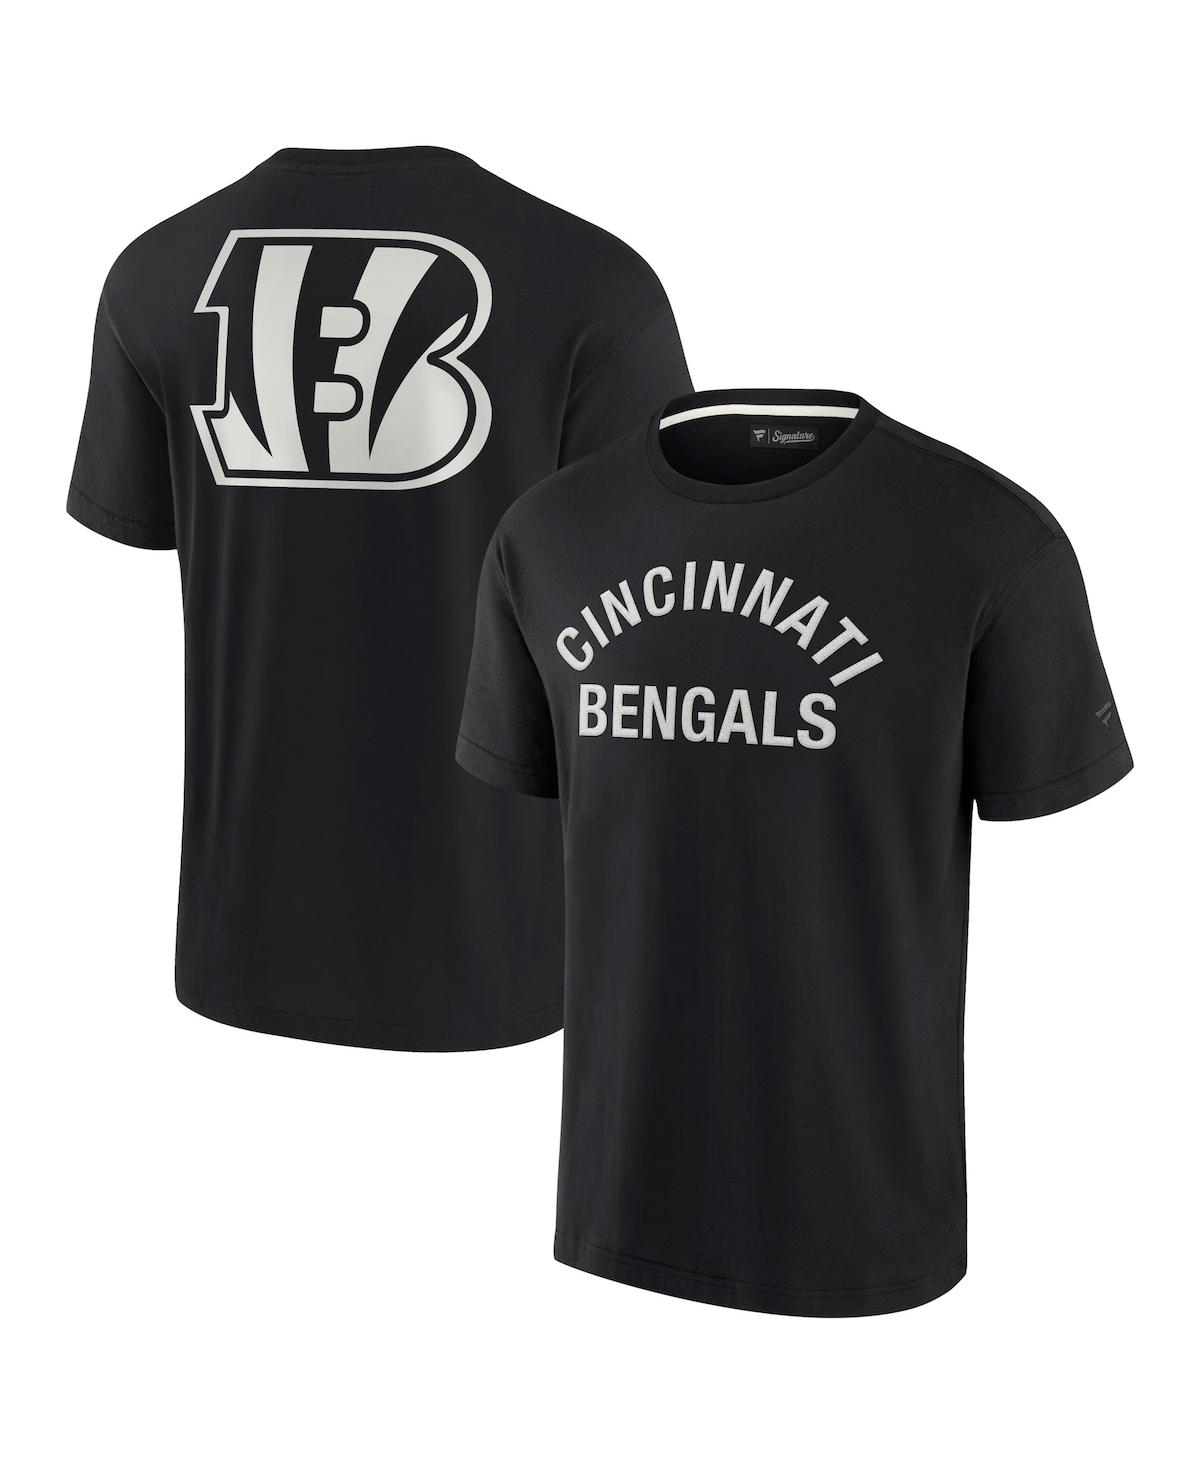 Men's and Women's Fanatics Signature Black Cincinnati Bengals Super Soft Short Sleeve T-shirt - Black